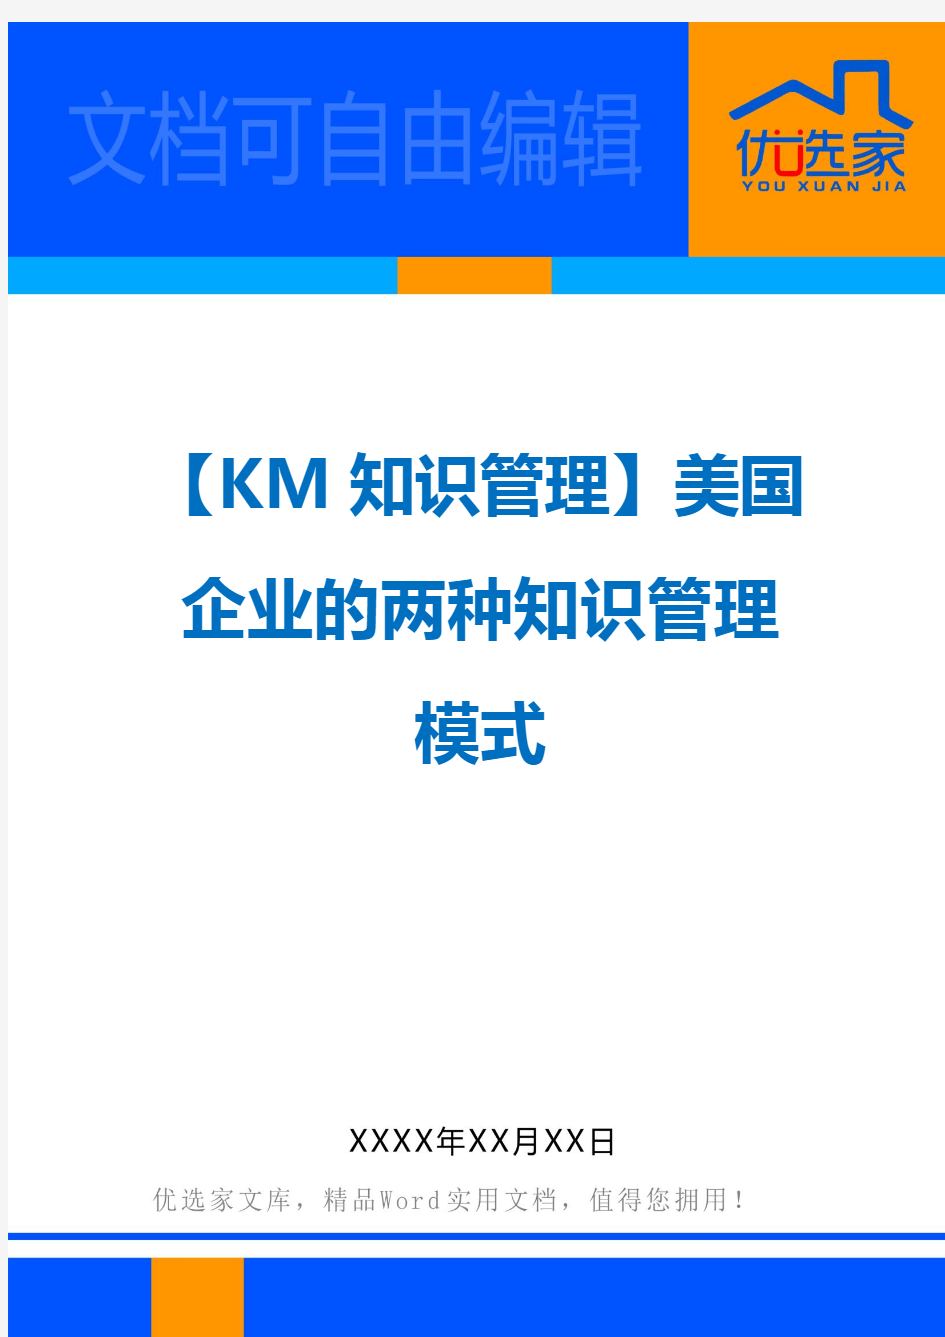 【KM知识管理】美国企业的两种知识管理模式